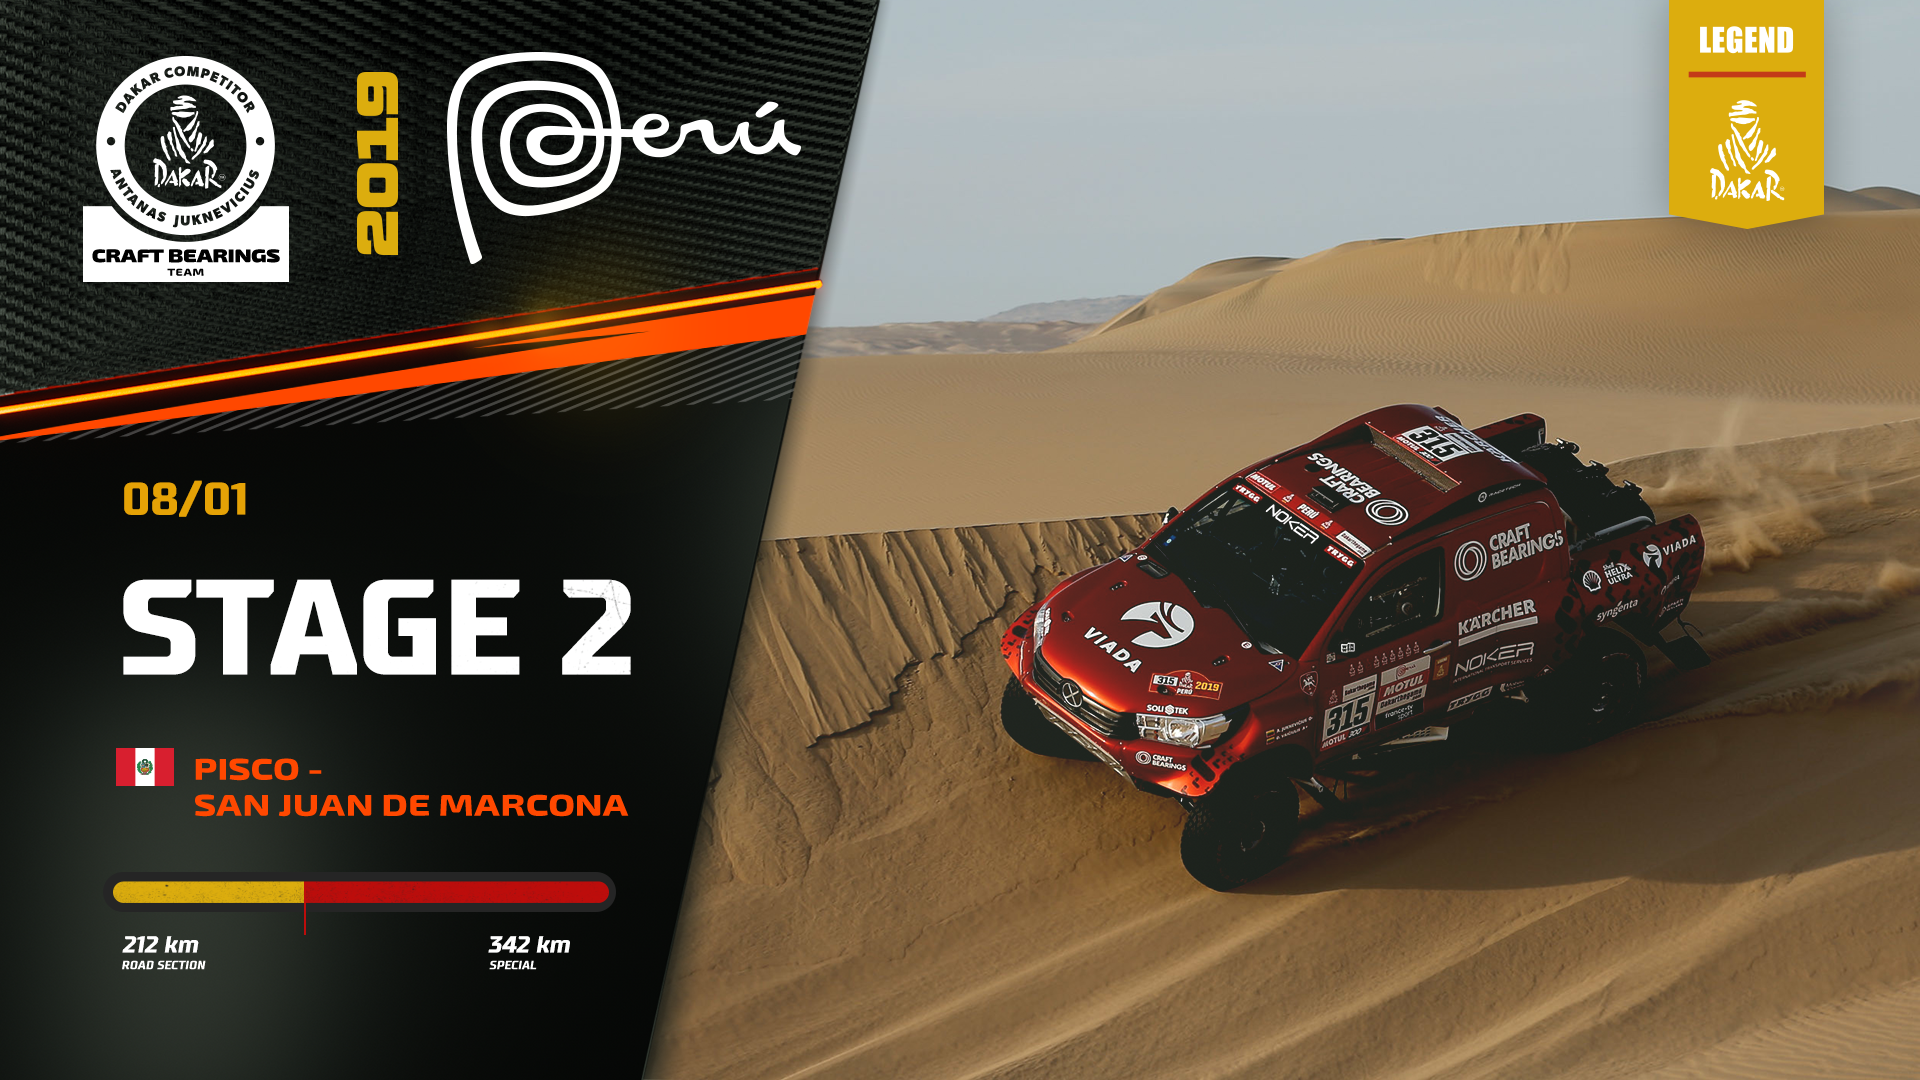 Dakar Rally 2019. Antanas Juknevicius Stage 2 Highlights